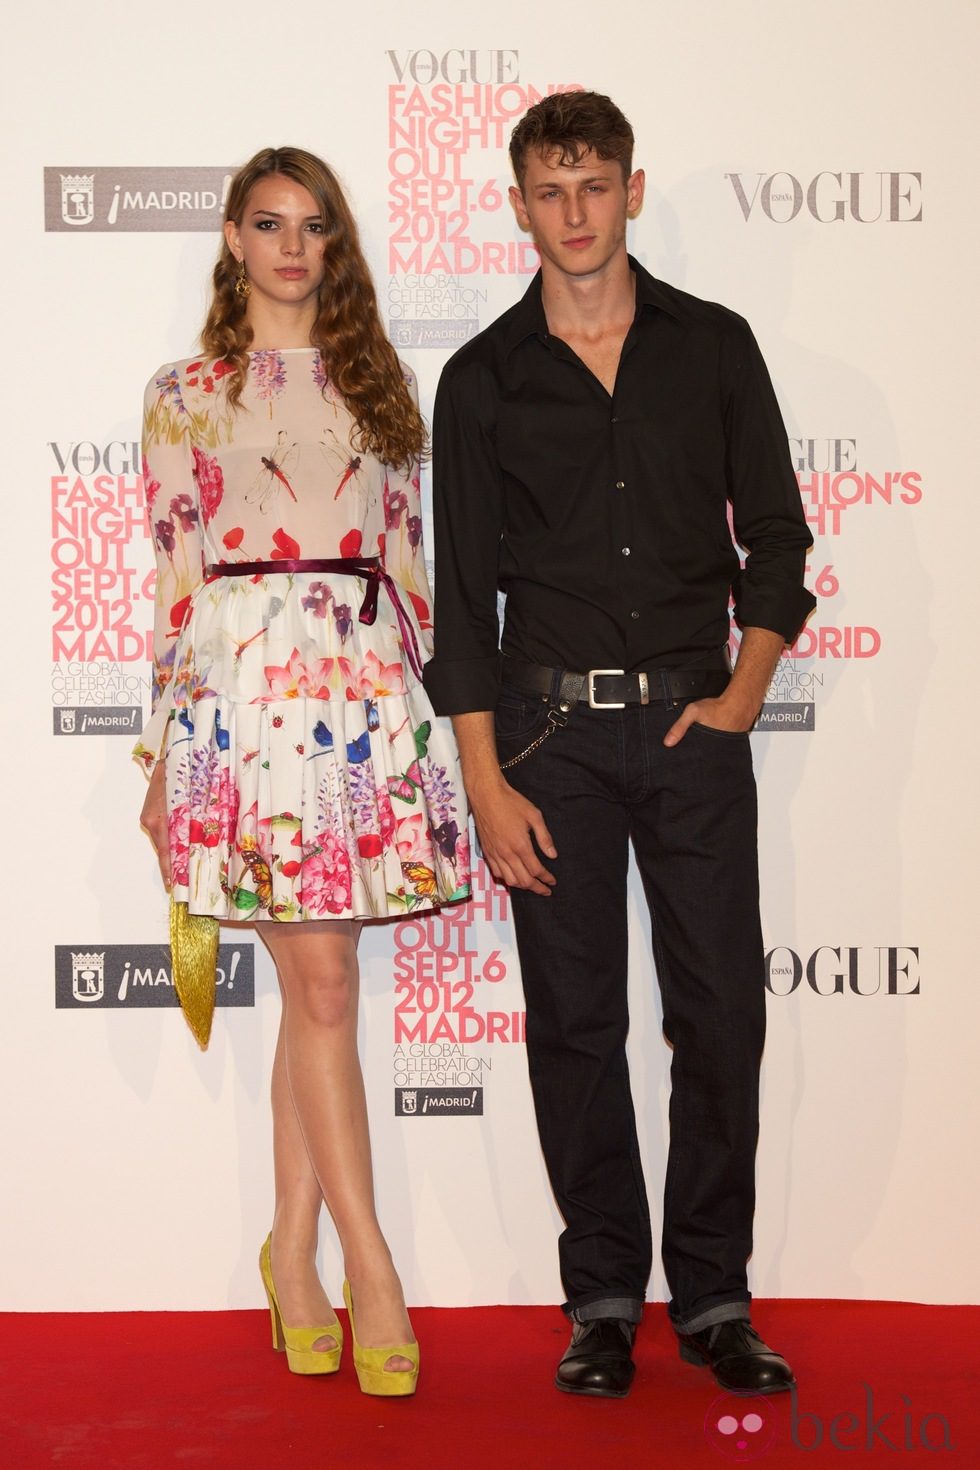 Cristina Duato y Nicolás Coronado en la Vogue Fashion's Night Out 2012 en Madrid